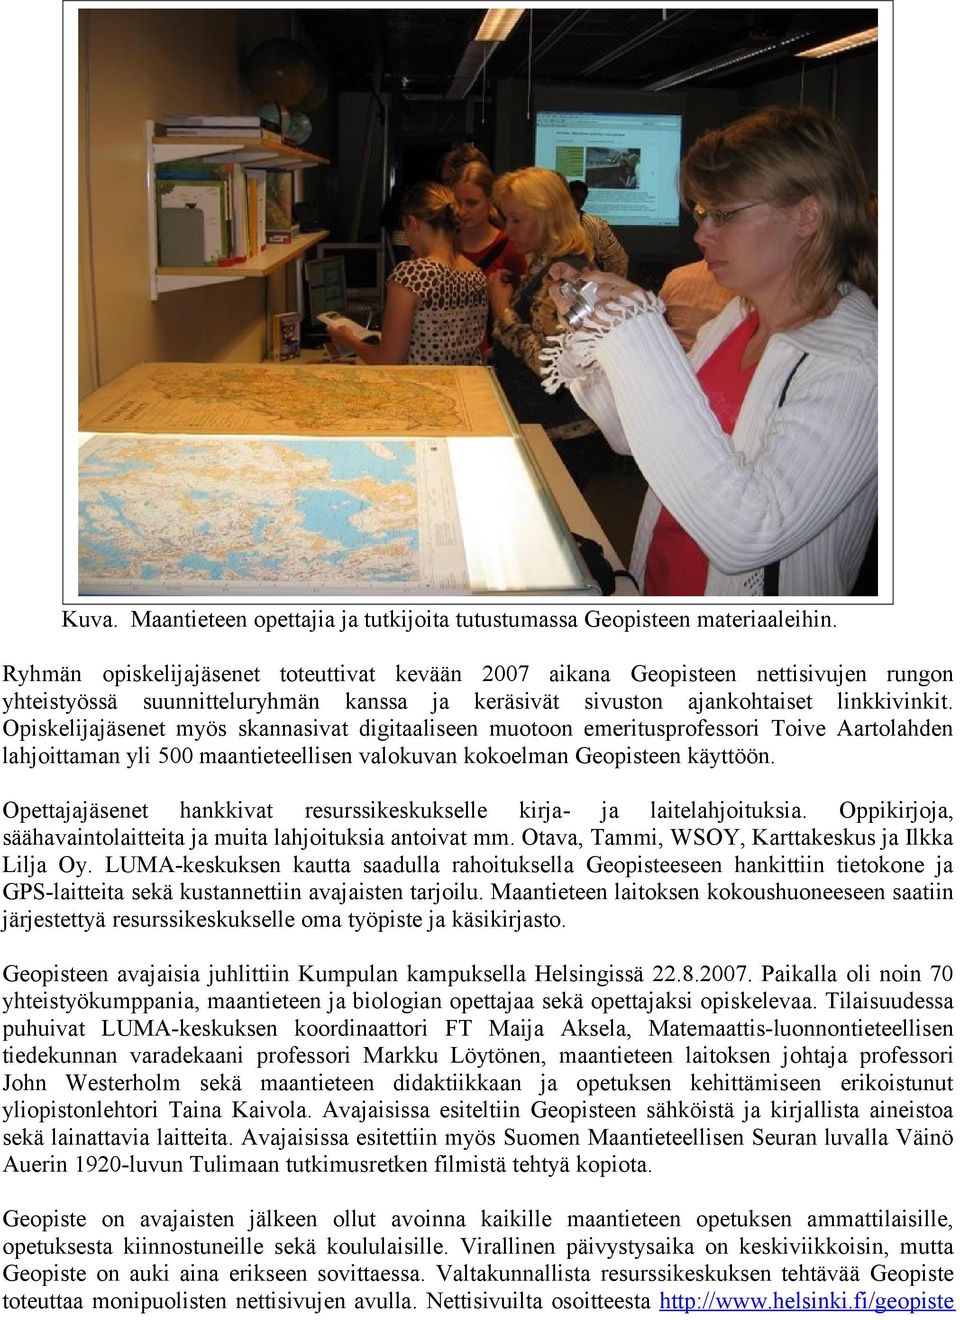 Opiskelijajäsenet myös skannasivat digitaaliseen muotoon emeritusprofessori Toive Aartolahden lahjoittaman yli 500 maantieteellisen valokuvan kokoelman Geopisteen käyttöön.